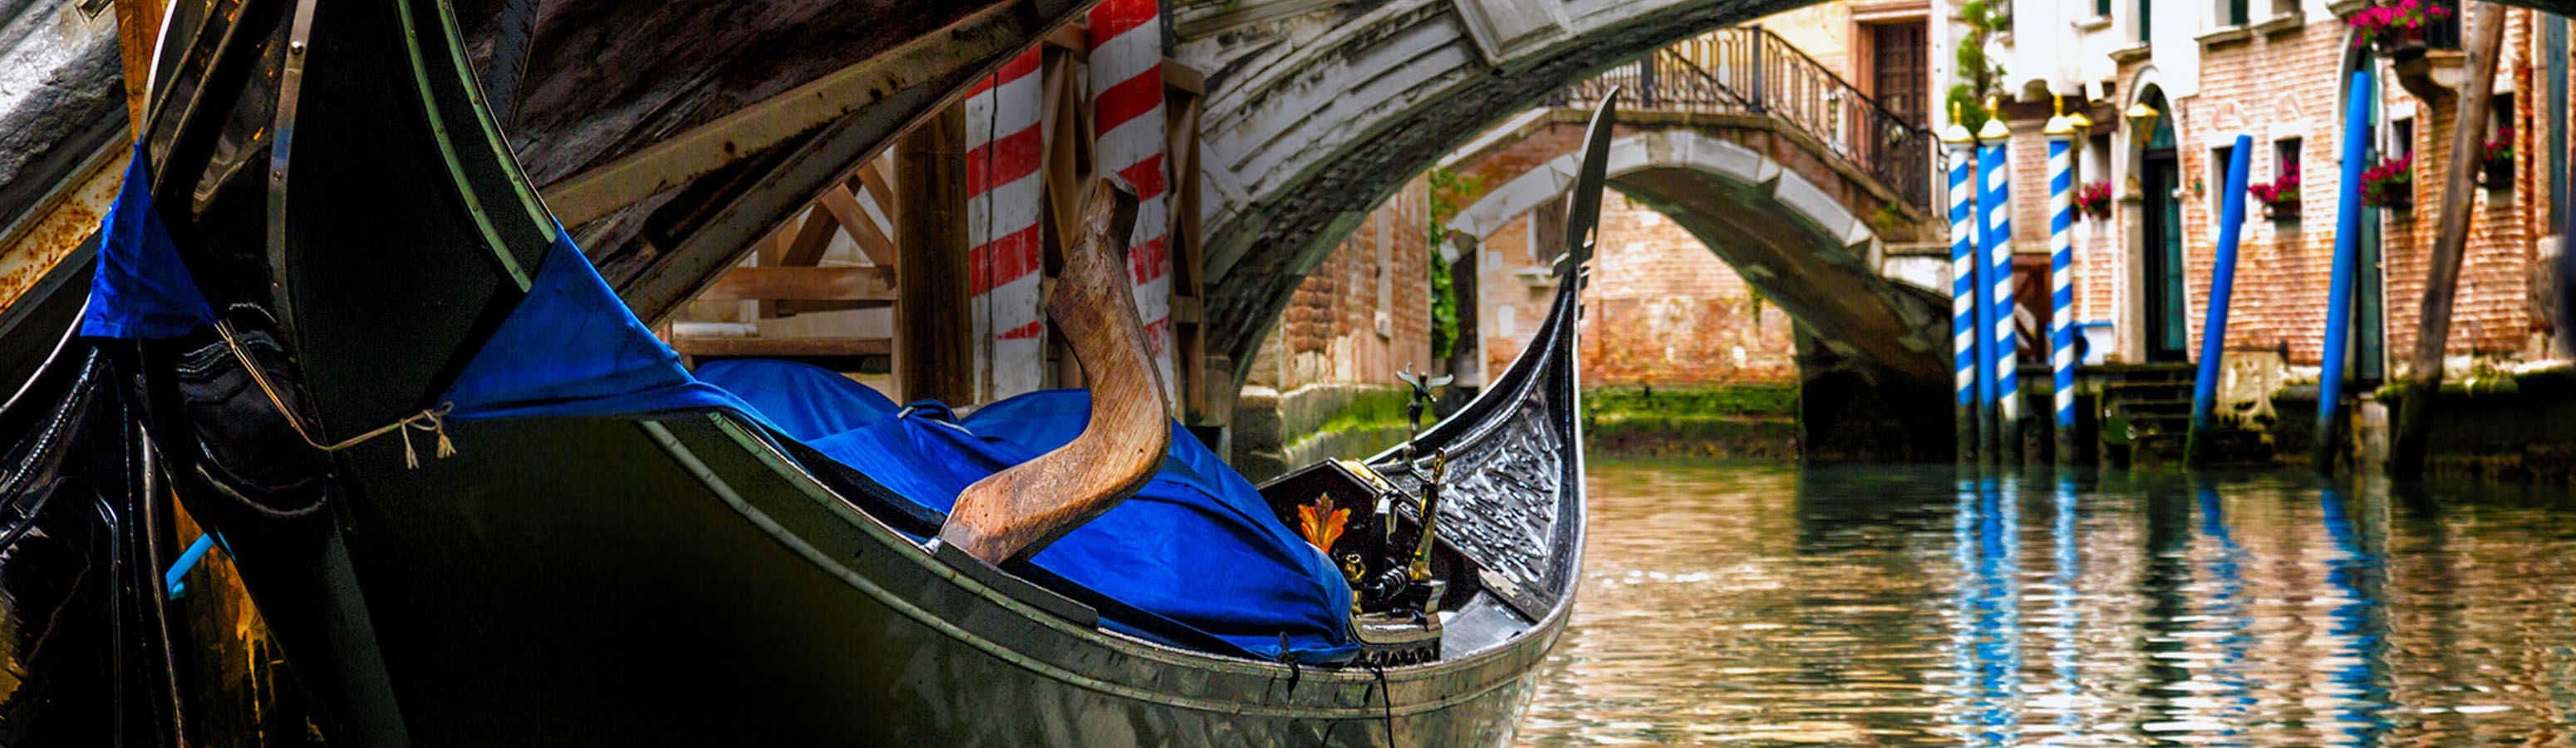 Plavba v gondole po Benátkách nemusí být zas taková romantika, jak čekáte. Ale může to být vážně zábava.